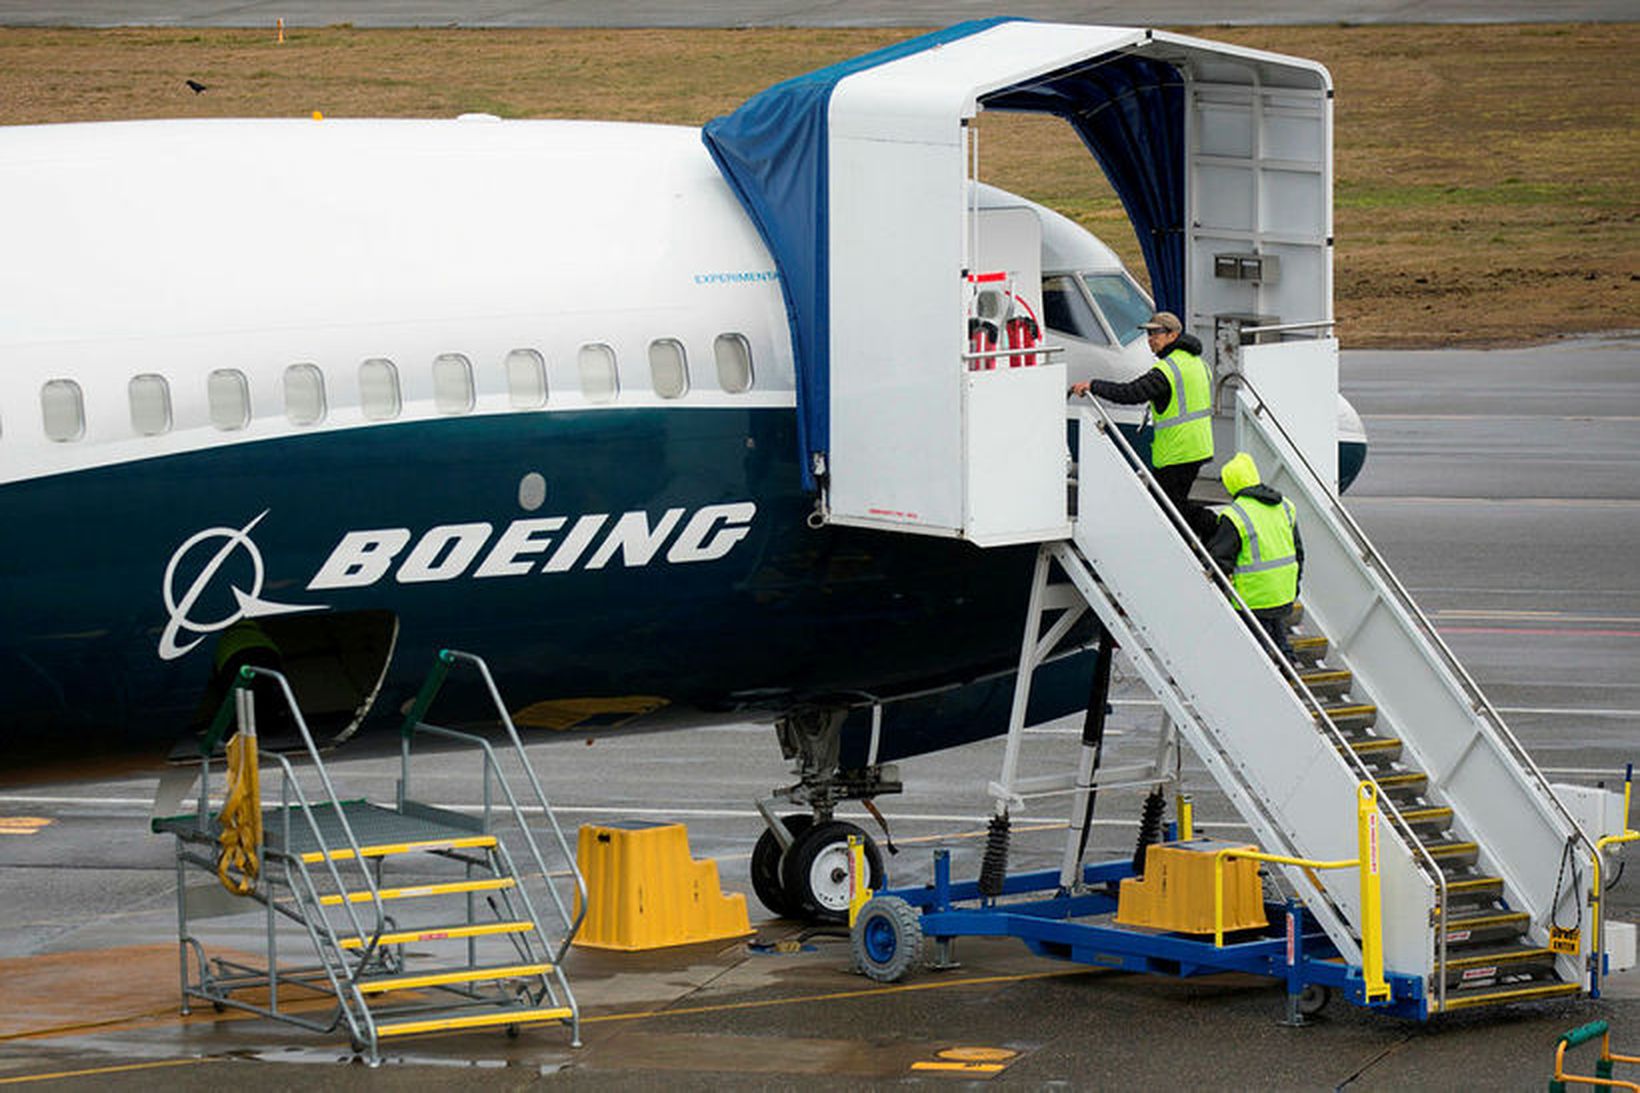 Starfsmenn fyrir framan Boeing 737 MAX-flugvél í mars síðastliðnum í …